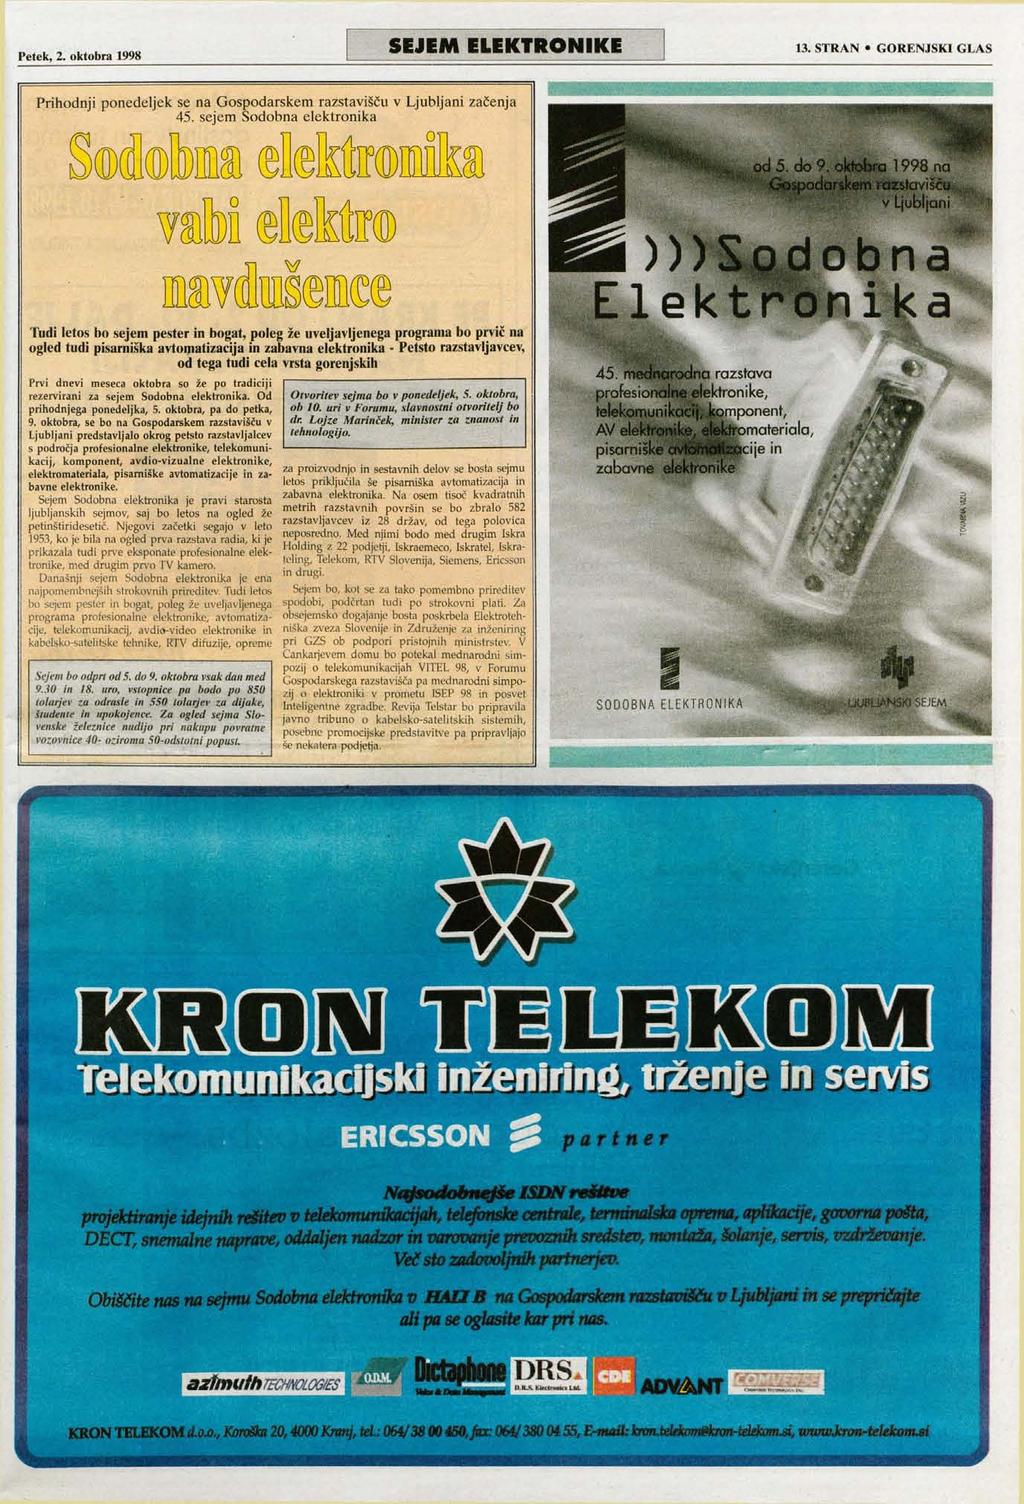 Petek, 2. oktobra 1998 SEJEM ELEKTRONIKE 13. STRAN GORENJSKI GLAS Prihodnji ponedeljek se na Gospodarskem razstavišču v Ljubljani začenja 45.